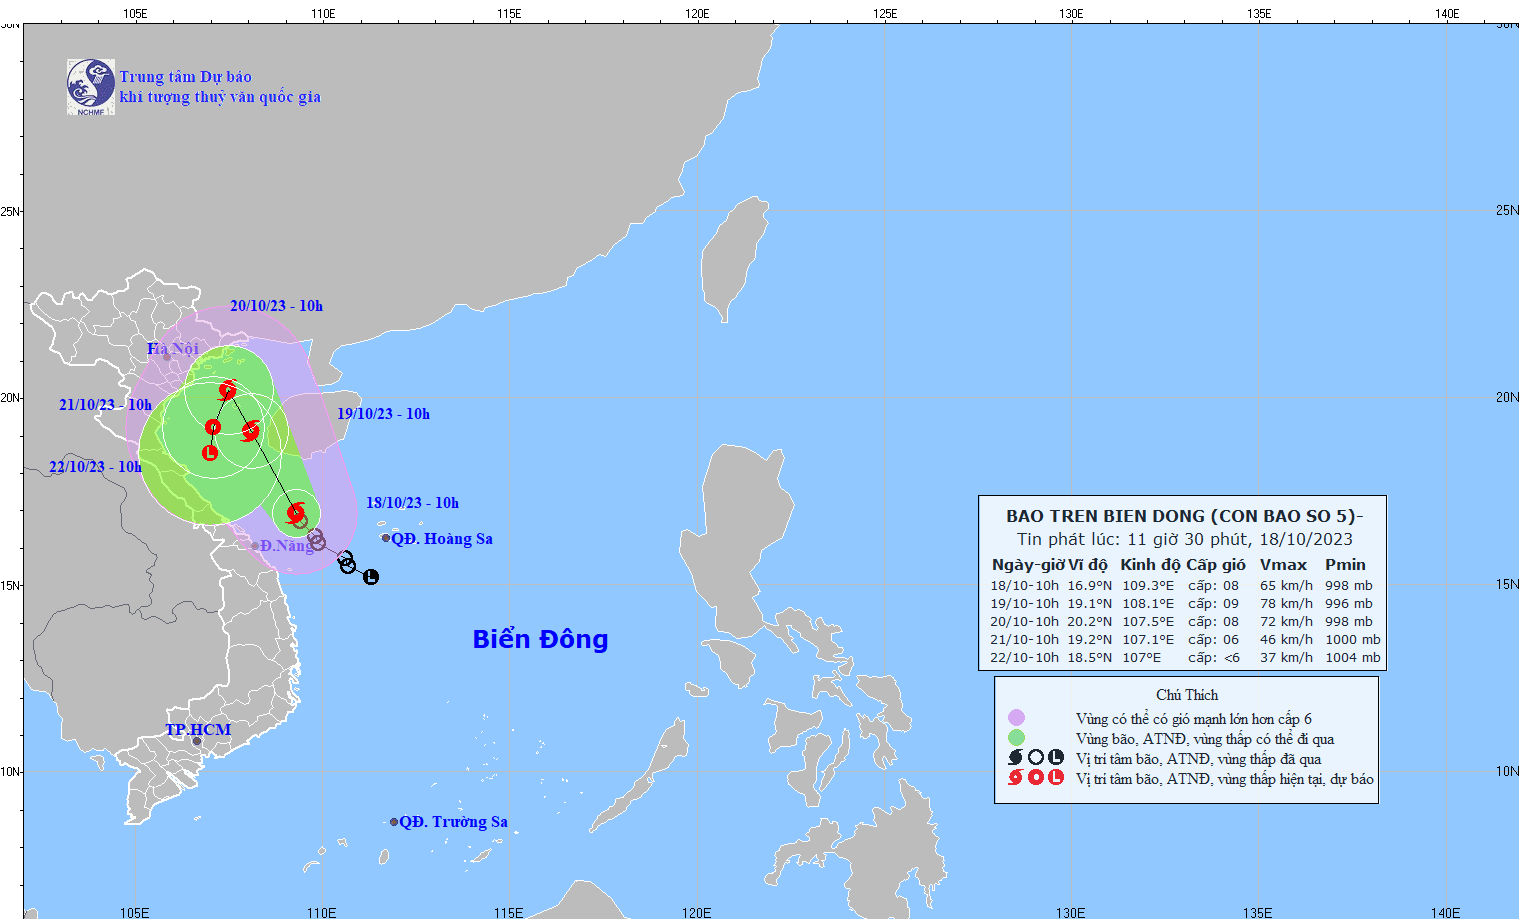 Áp thấp nhiệt đới mạnh lên thành bão số 5, trên vùng biển từ Quảng Trị đến Đà Nẵng